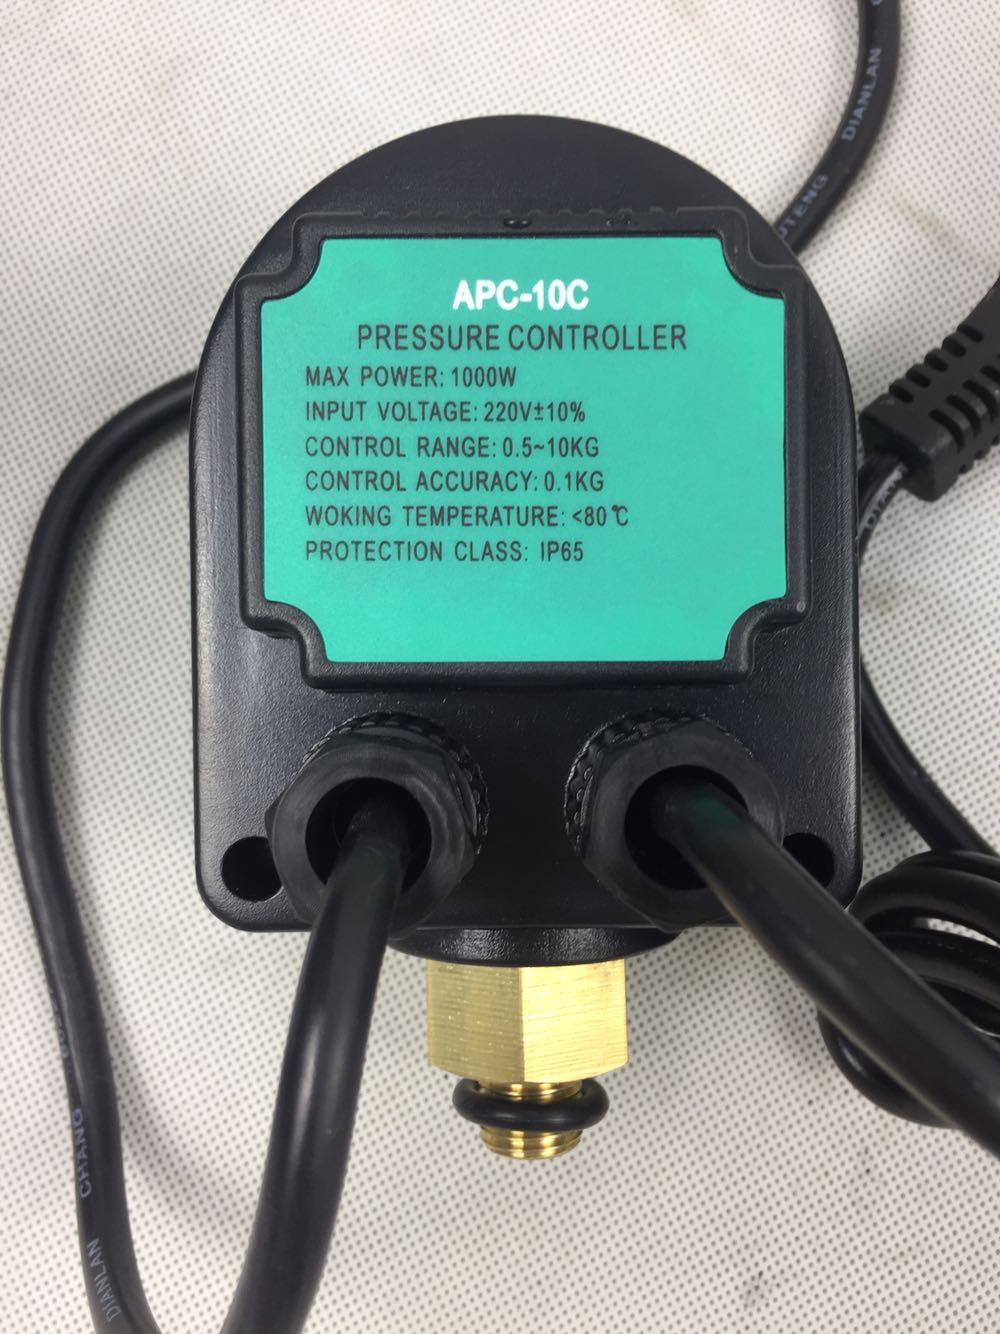 微电脑压力控制器家用自吸泵潜水泵自动开关缺水保护水龙头泵增压